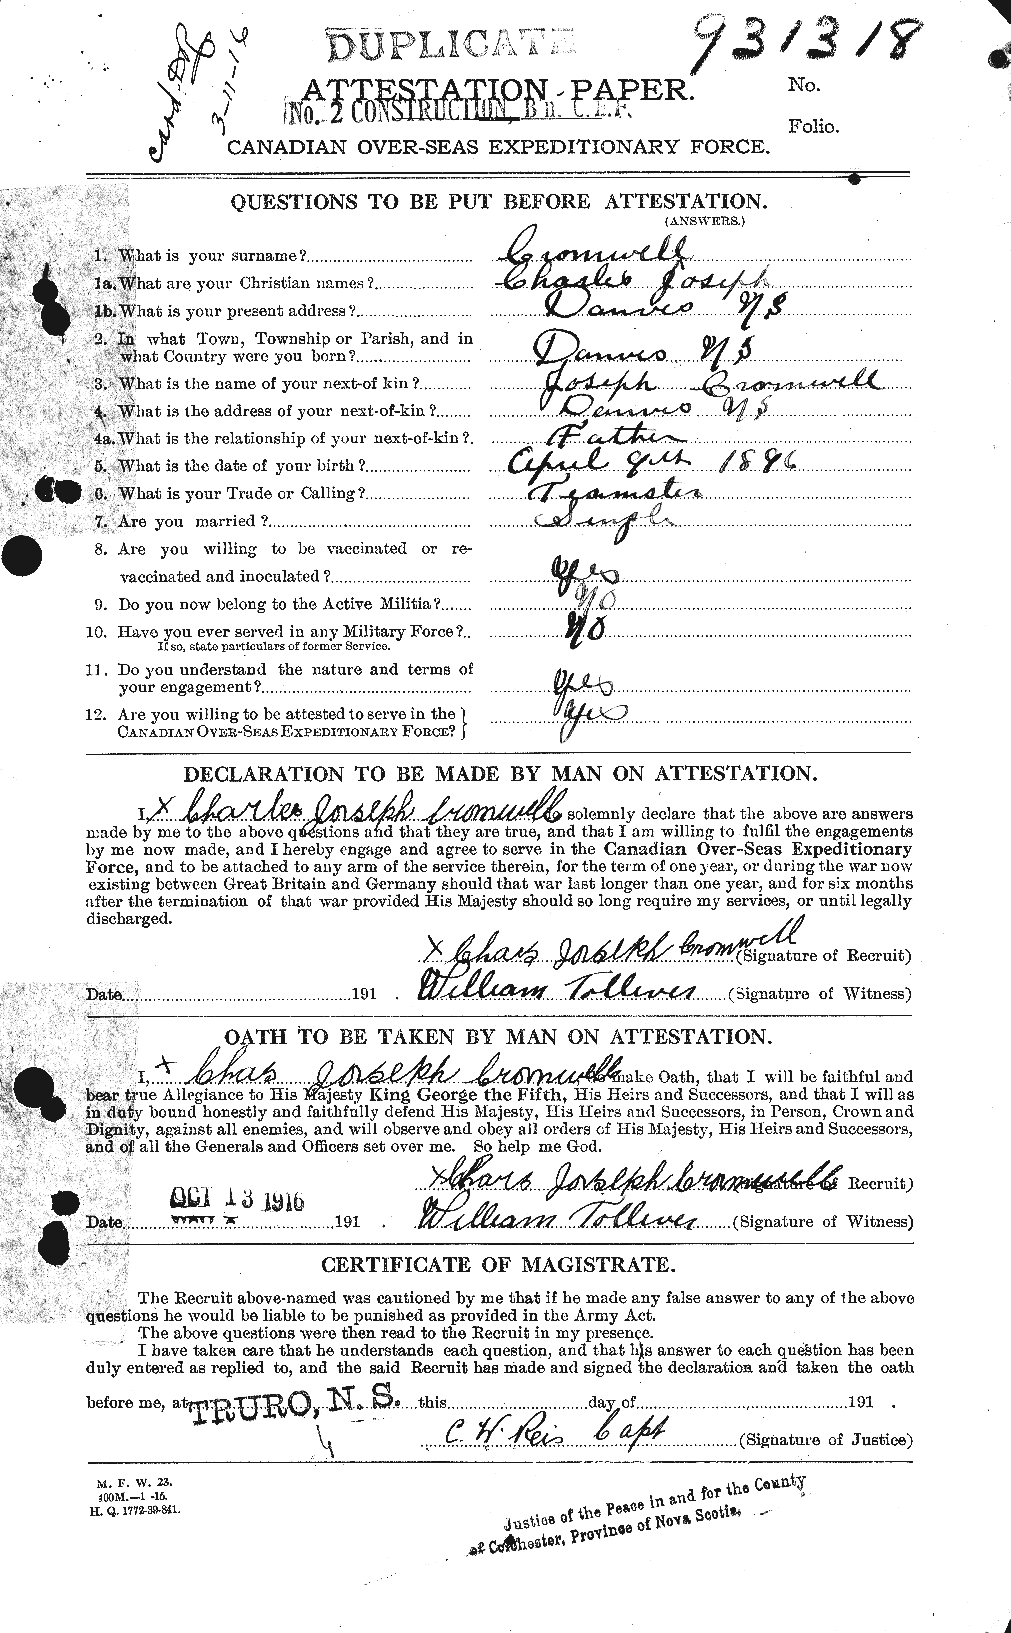 Dossiers du Personnel de la Première Guerre mondiale - CEC 064933a